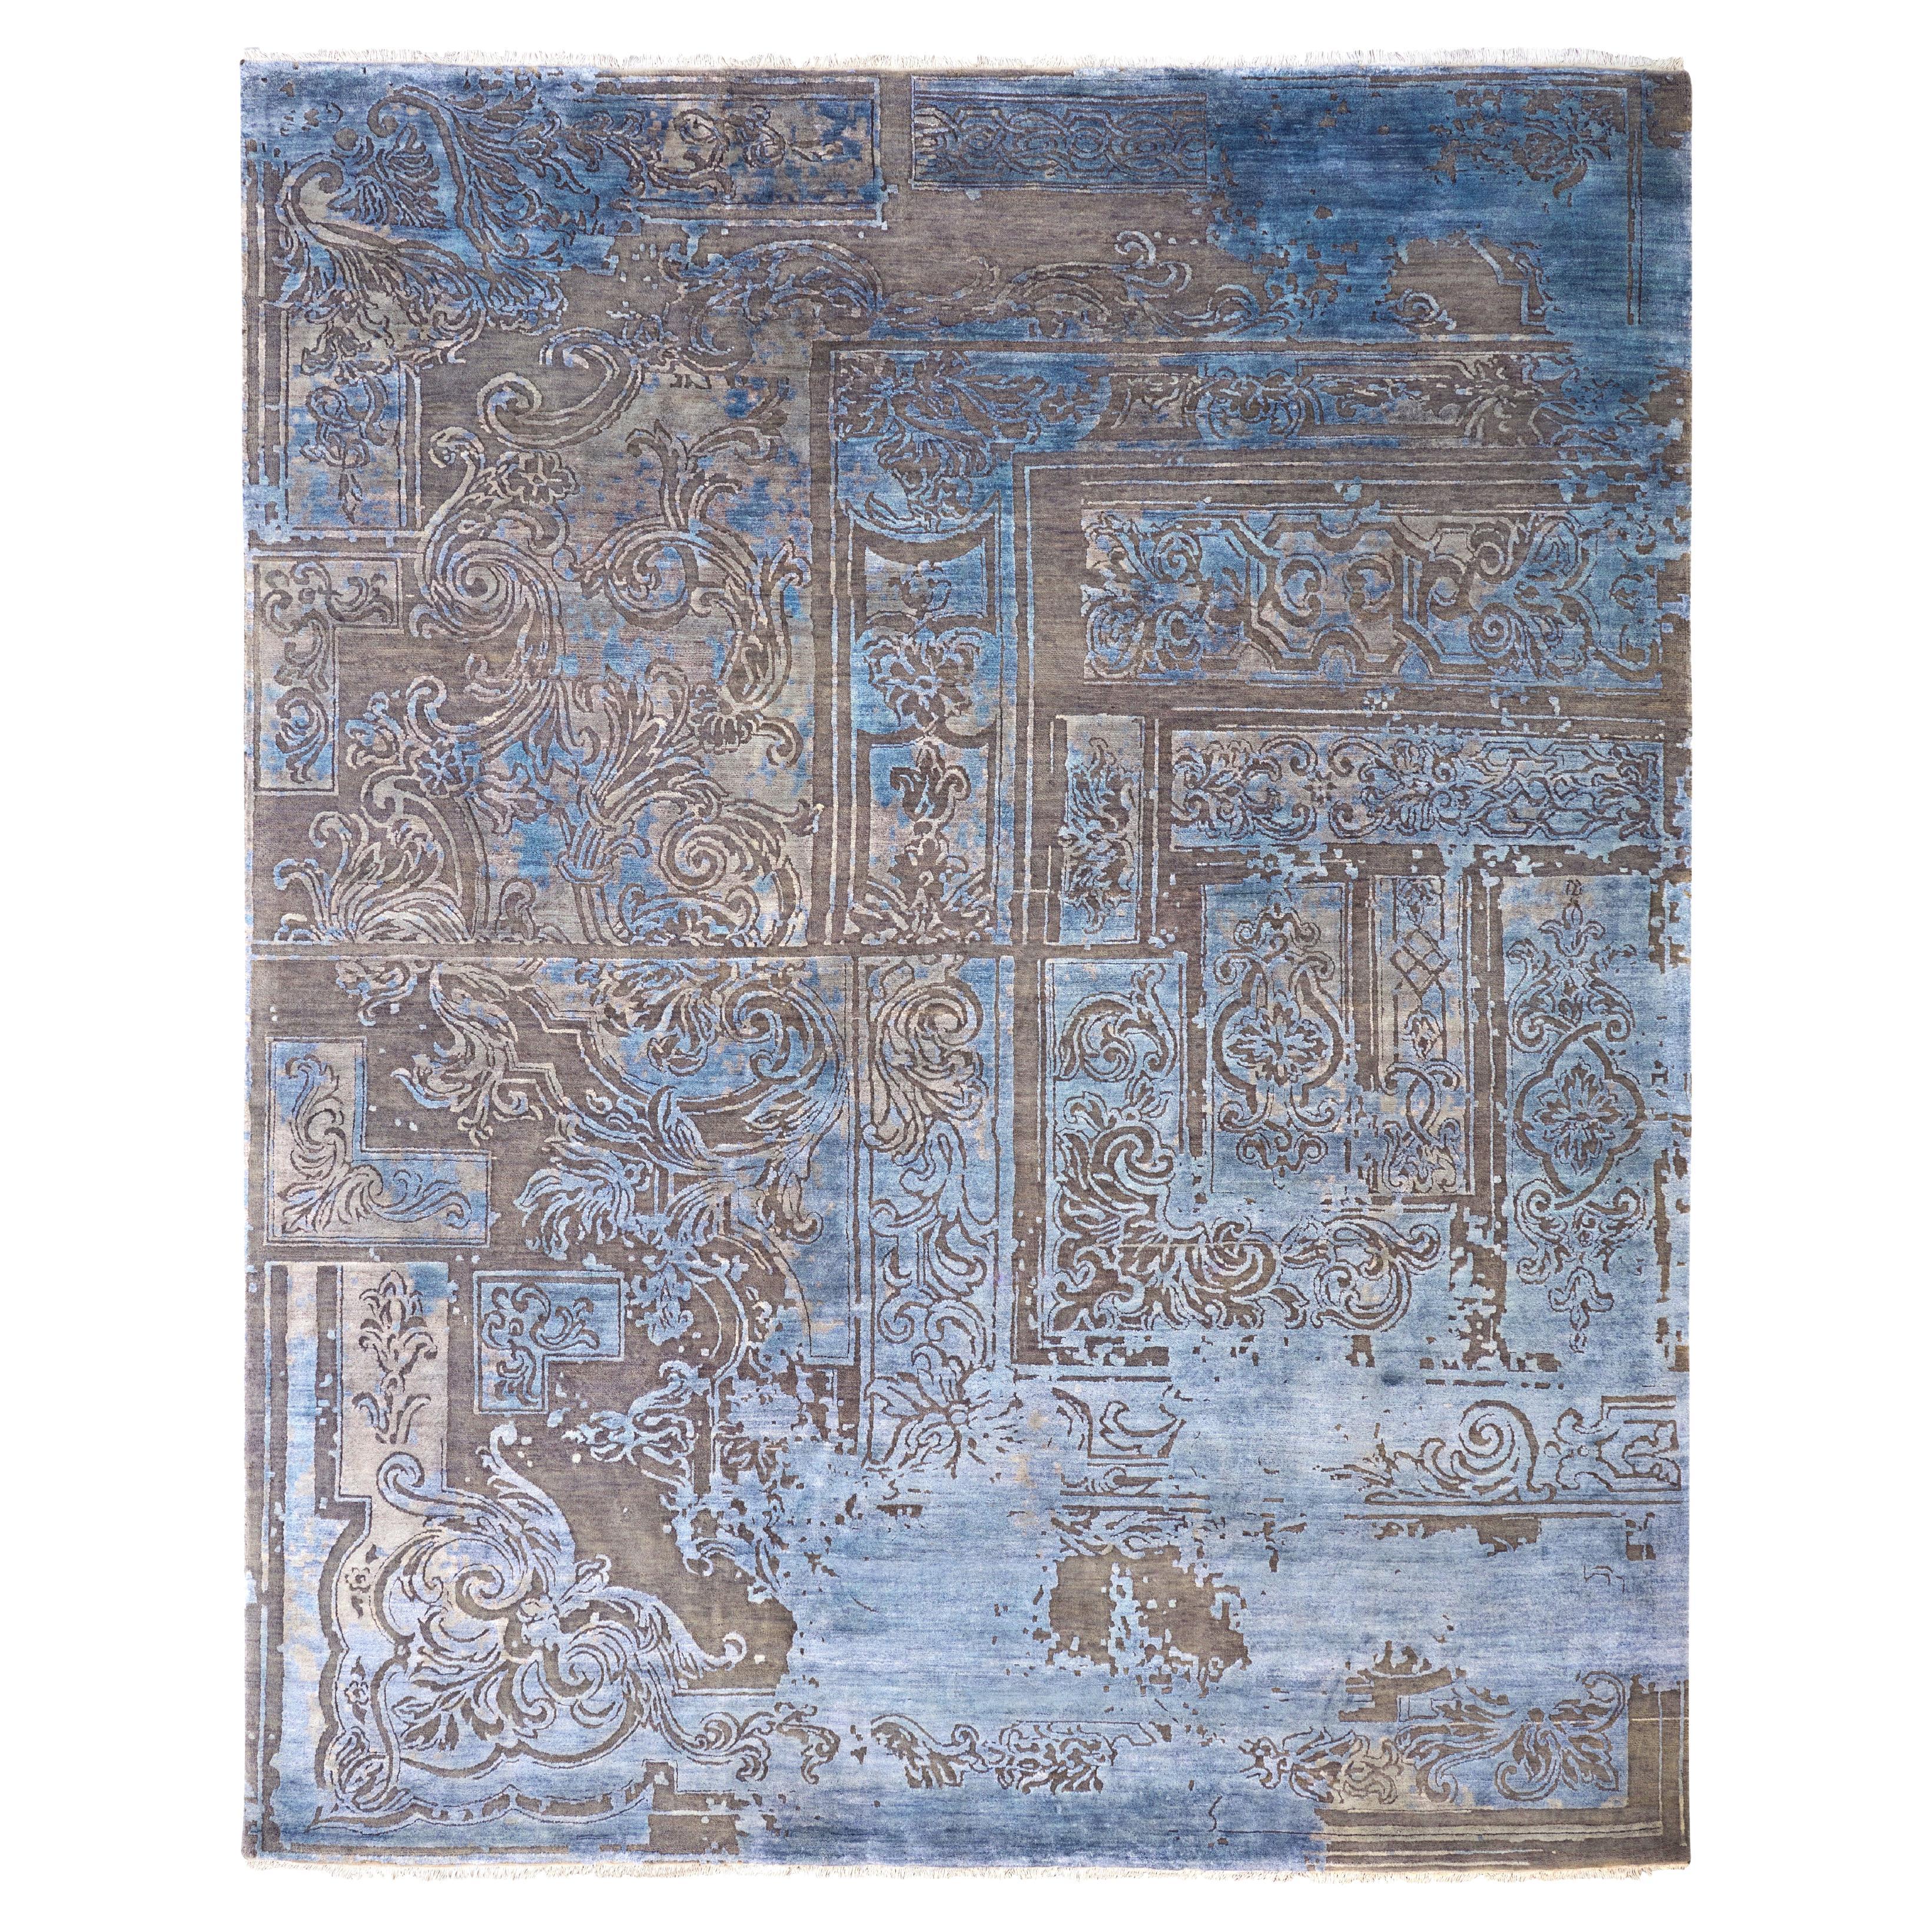 FABULEUX Handgeknüpfter französischer, vom Rokoko inspirierter Teppich in Blau und Taupe von Hand